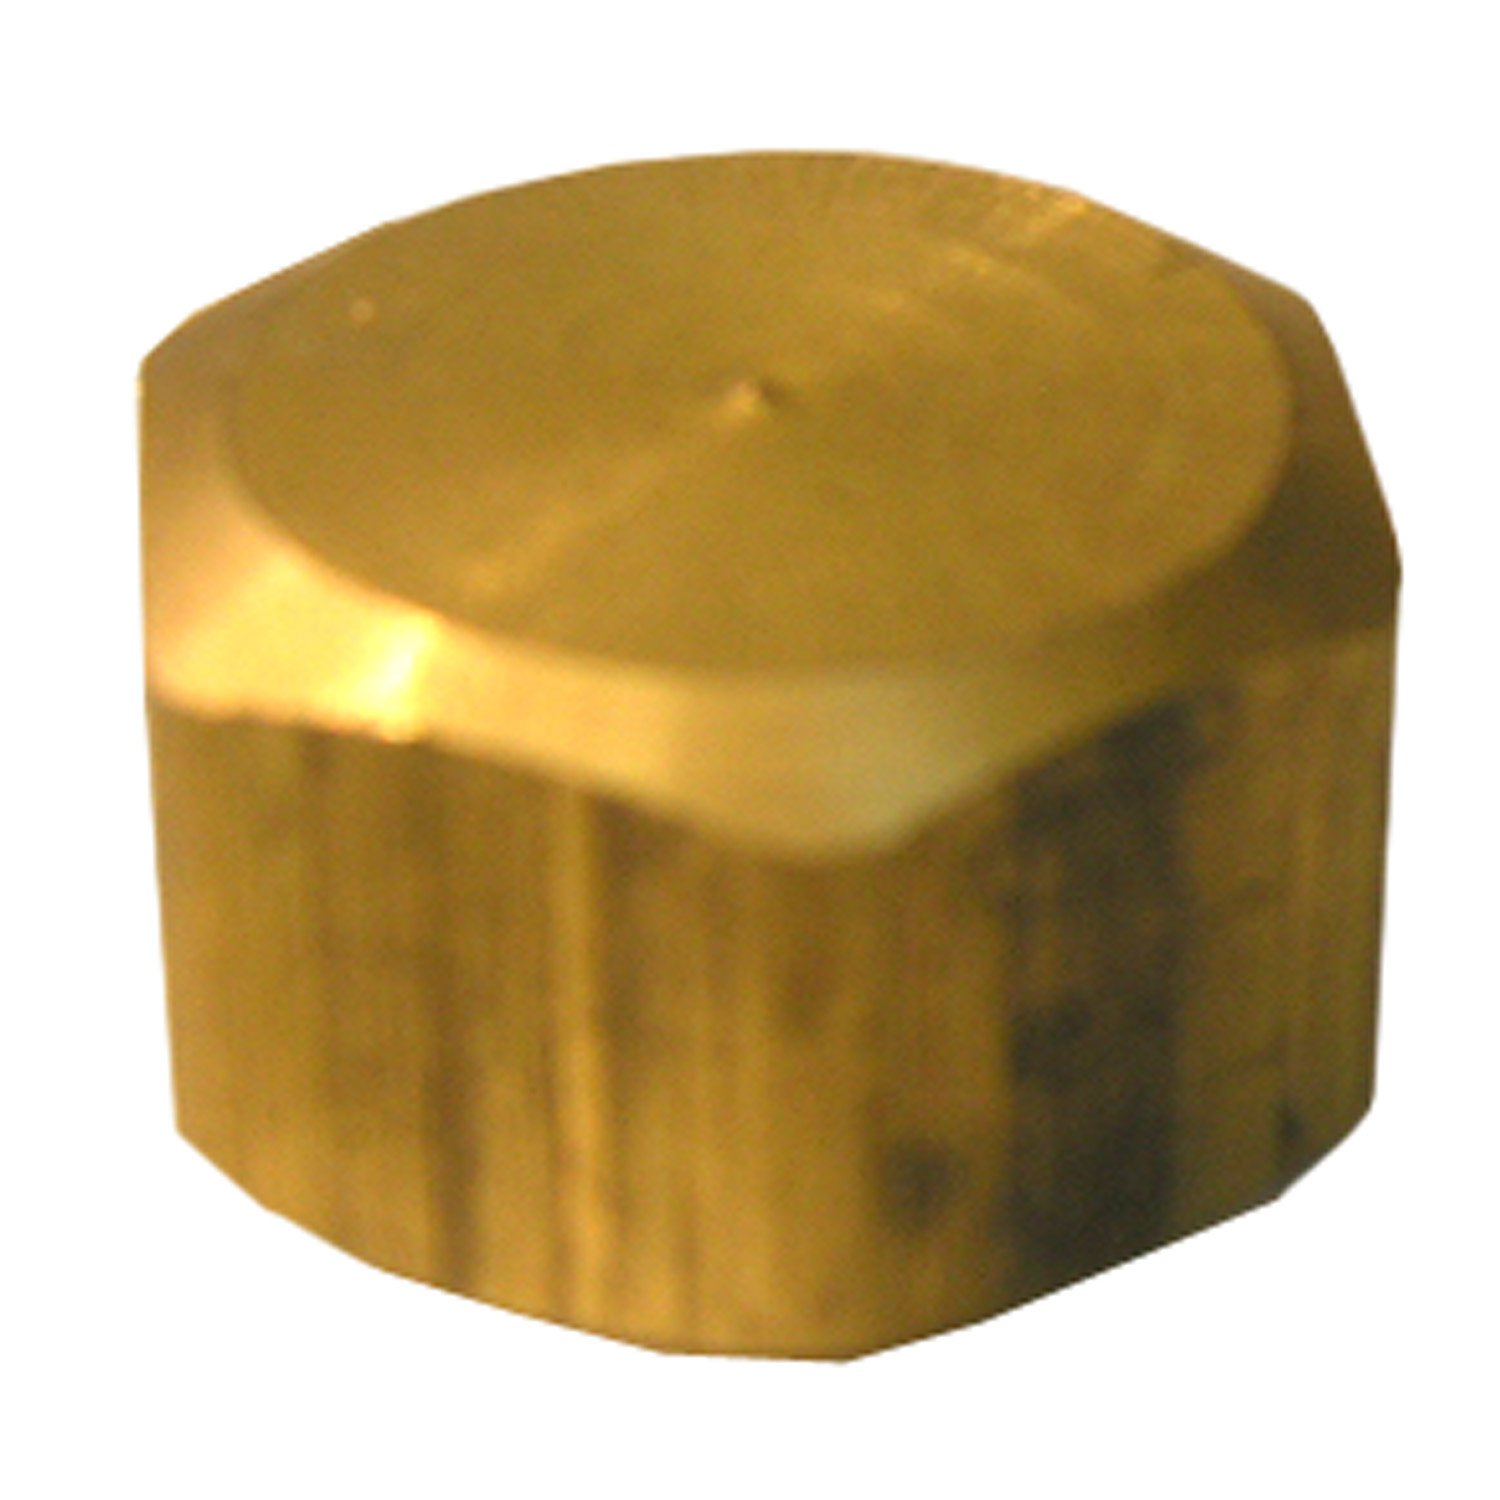 Lasco 17-6189 Pipe Cap, 5/8 in, Compression, Brass, 150 psi Pressure